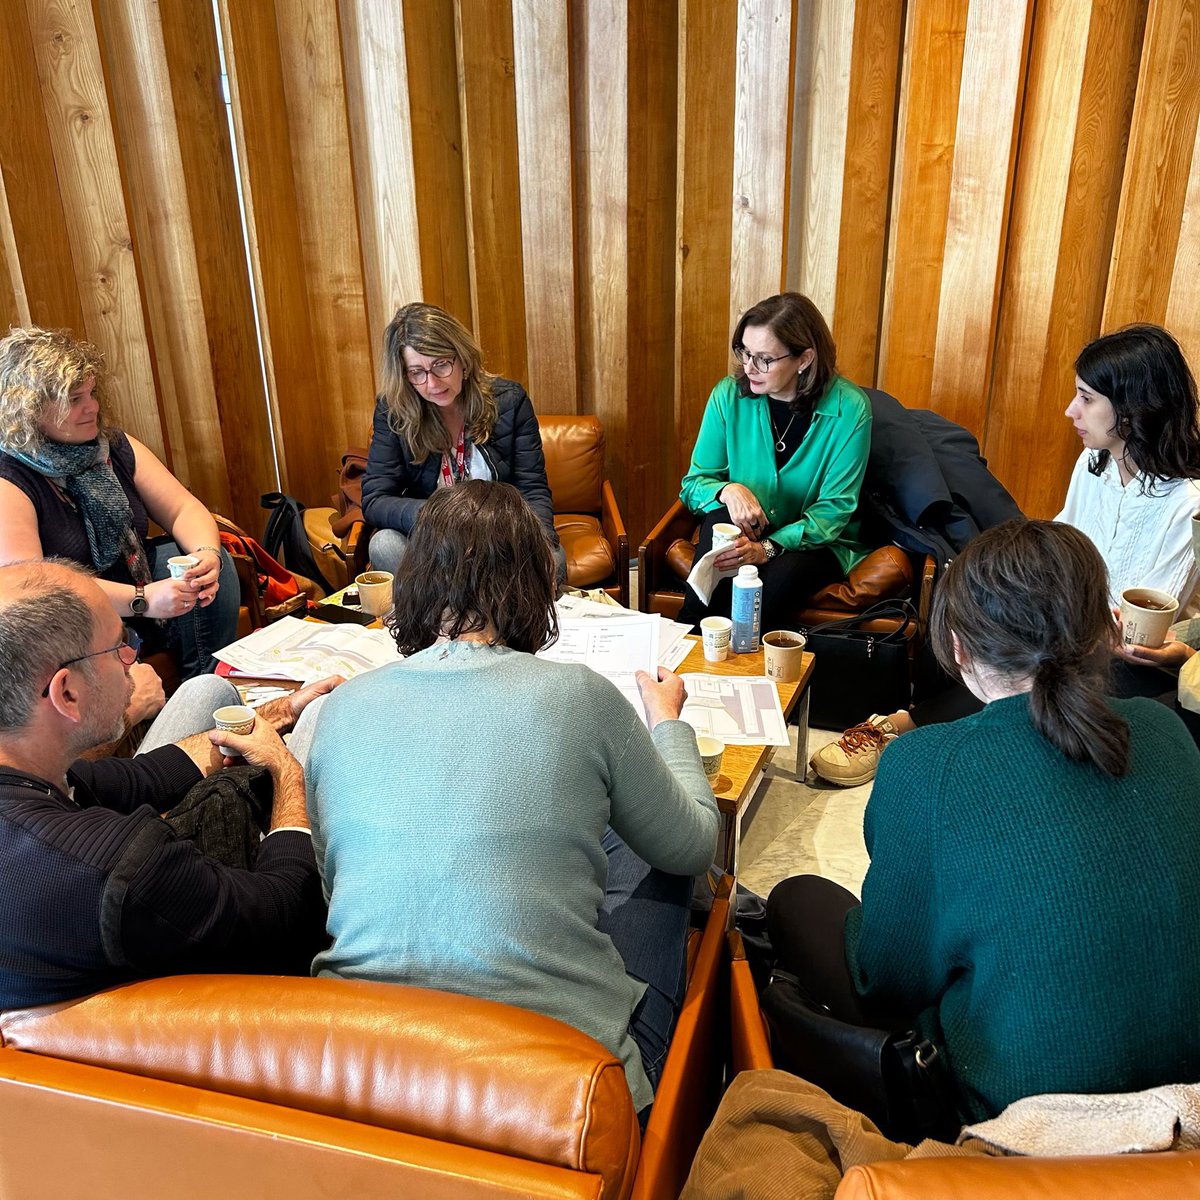 Aujourd'hui, Sonia Bahri, conseillère Développement Durable a accueilli 5 représentants de la @villedetours pour une visite du jardin potager éco-responsable de l'@UNESCO. Échanges sur les défis d’installation, gestion quotidienne et volet pédagogique. #biodiversité #climat #ODD